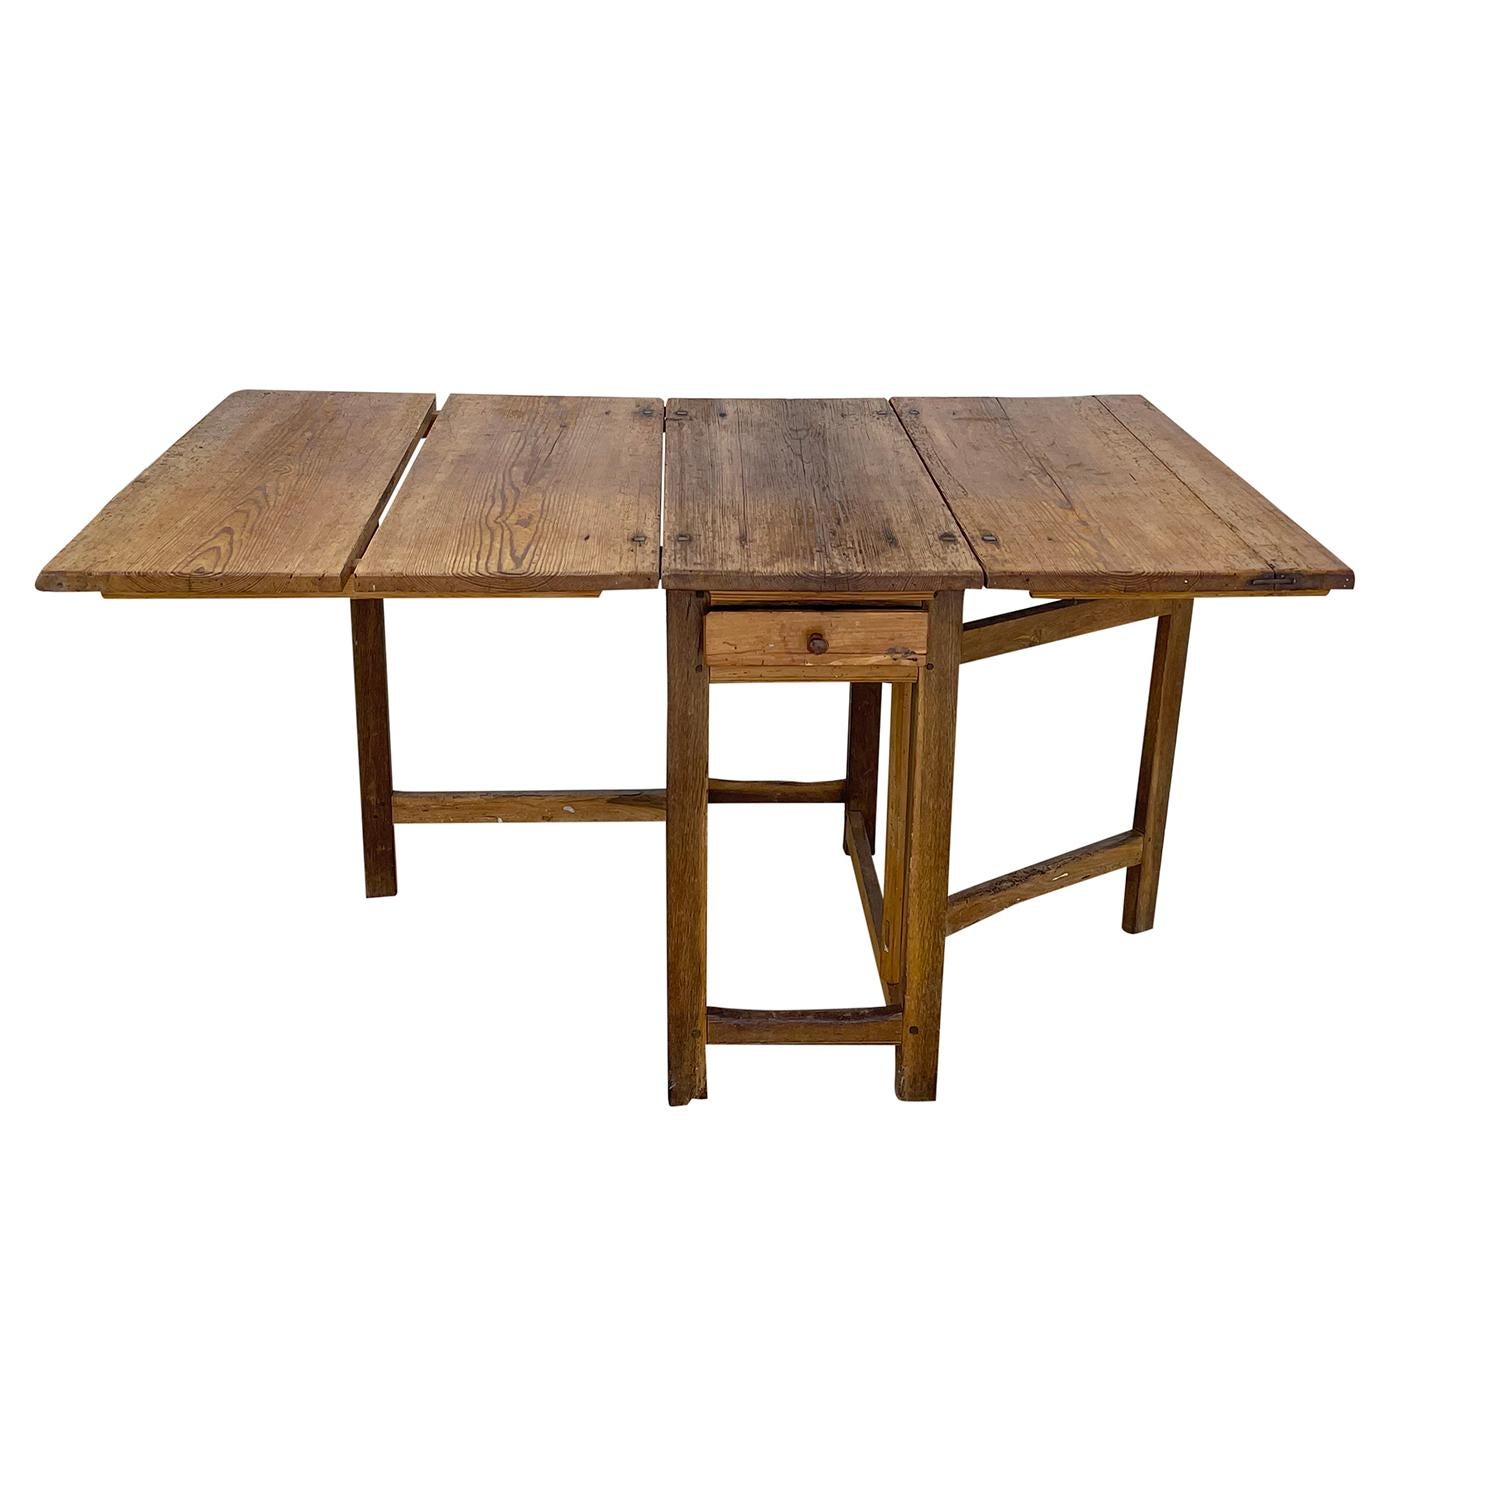 Ancienne table de ferme suédoise gustavienne en noyer travaillé à la main avec un tiroir, en bon état. La table de cuisine rustique scandinave est composée de deux abattants, les charnières sont en fer forgé artisanal, soutenues par une base en bois